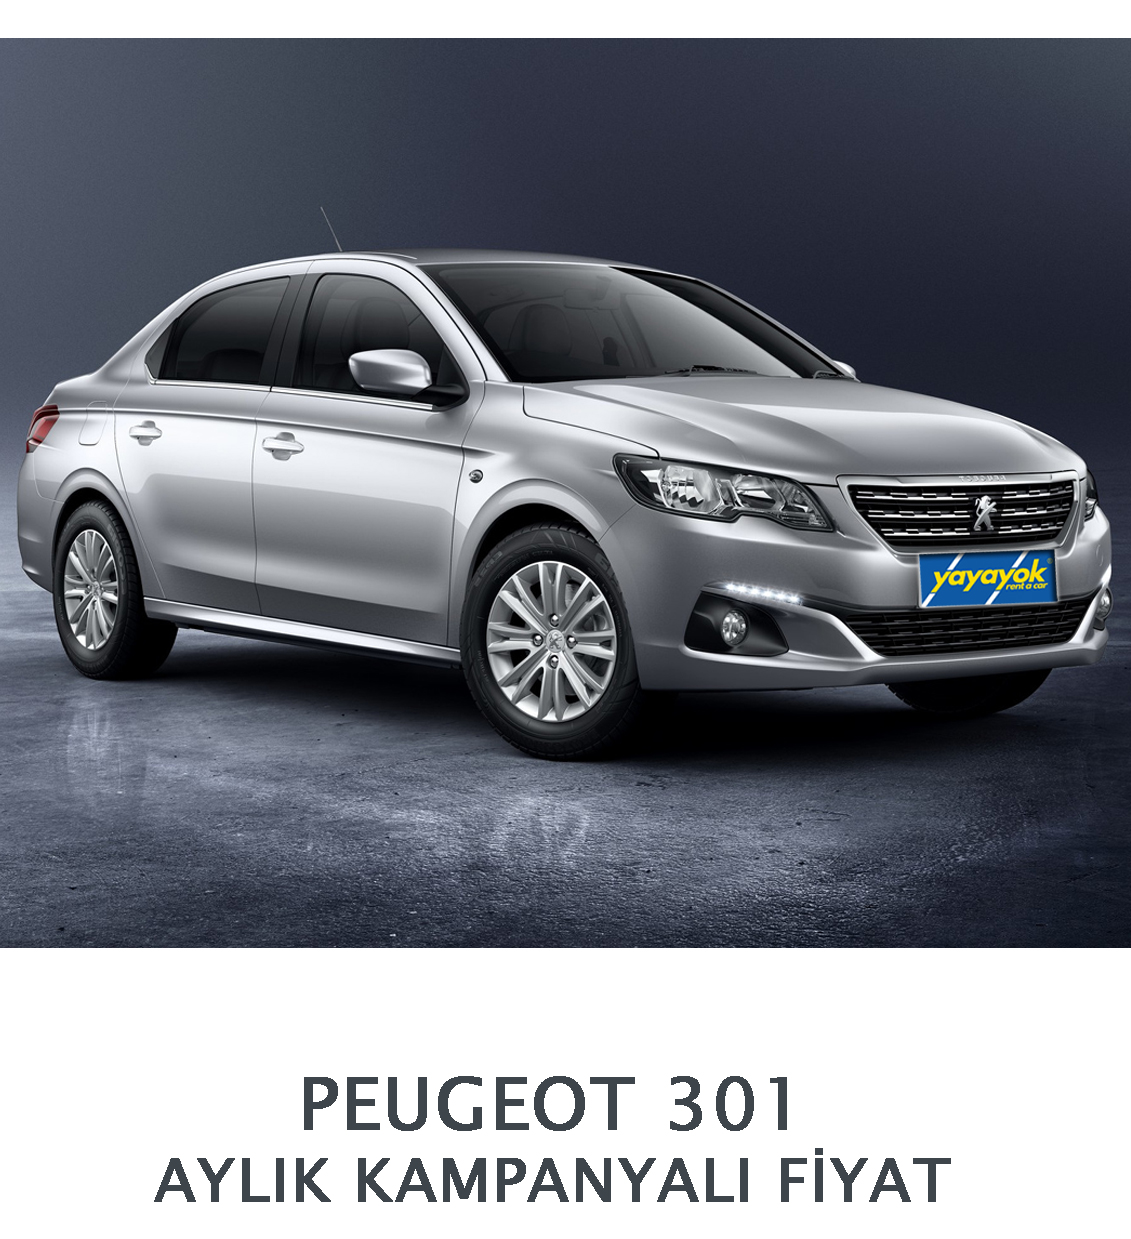 Aylık Kampanyalı Fiyat Peugeot 301